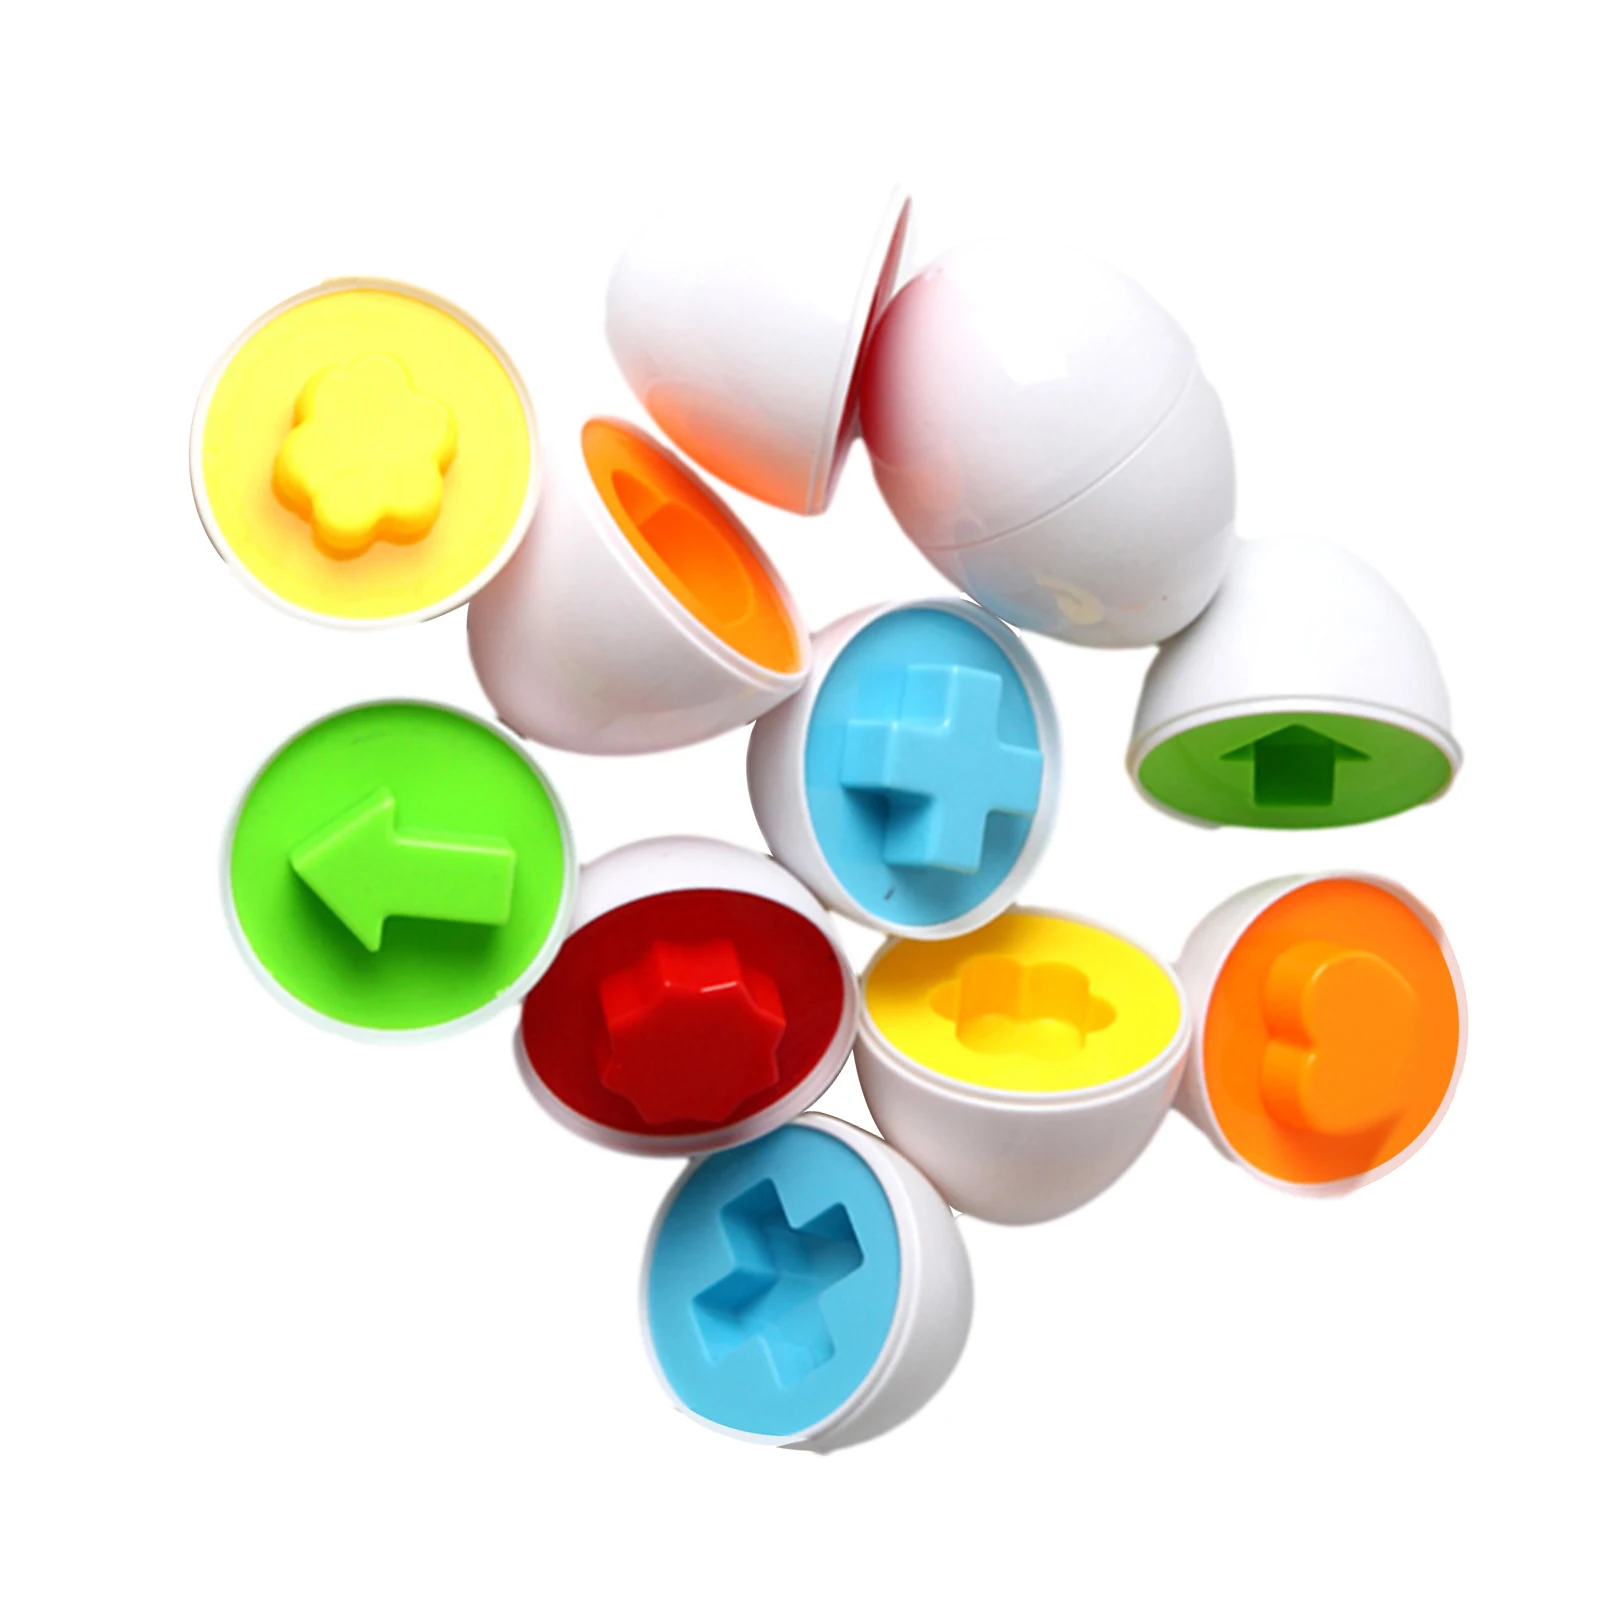 Монтессори твист яйцо игрушка Форма матч познавательные игрушки для детей Ealy Развивающие Игрушки для раннего обучения Развивающие имитаци...